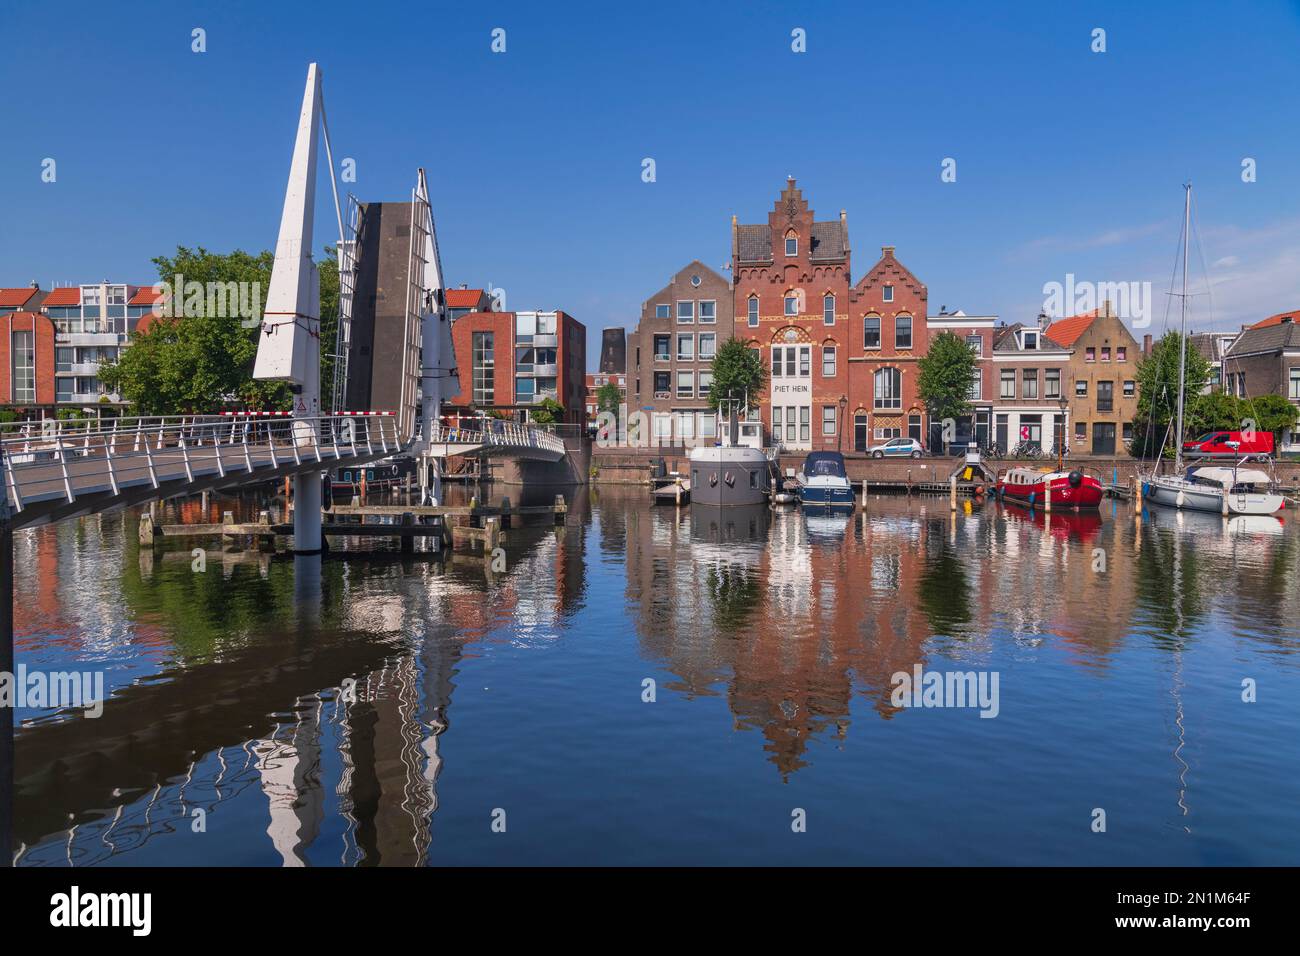 Hollande, Rotterdam, le double pont-levis connu sous le nom de pont VOC à travers l'Achterhaven avec le bâtiment Piet hein nommé d'après un navigateur de 16th siècle né localement. Banque D'Images